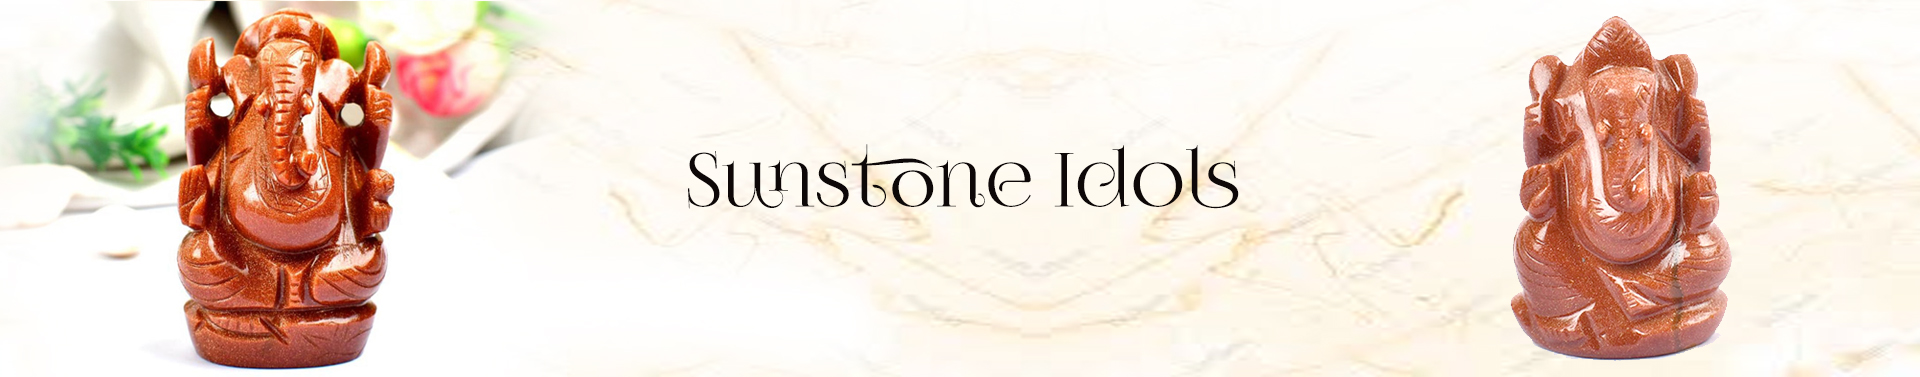 Sunstone Idols